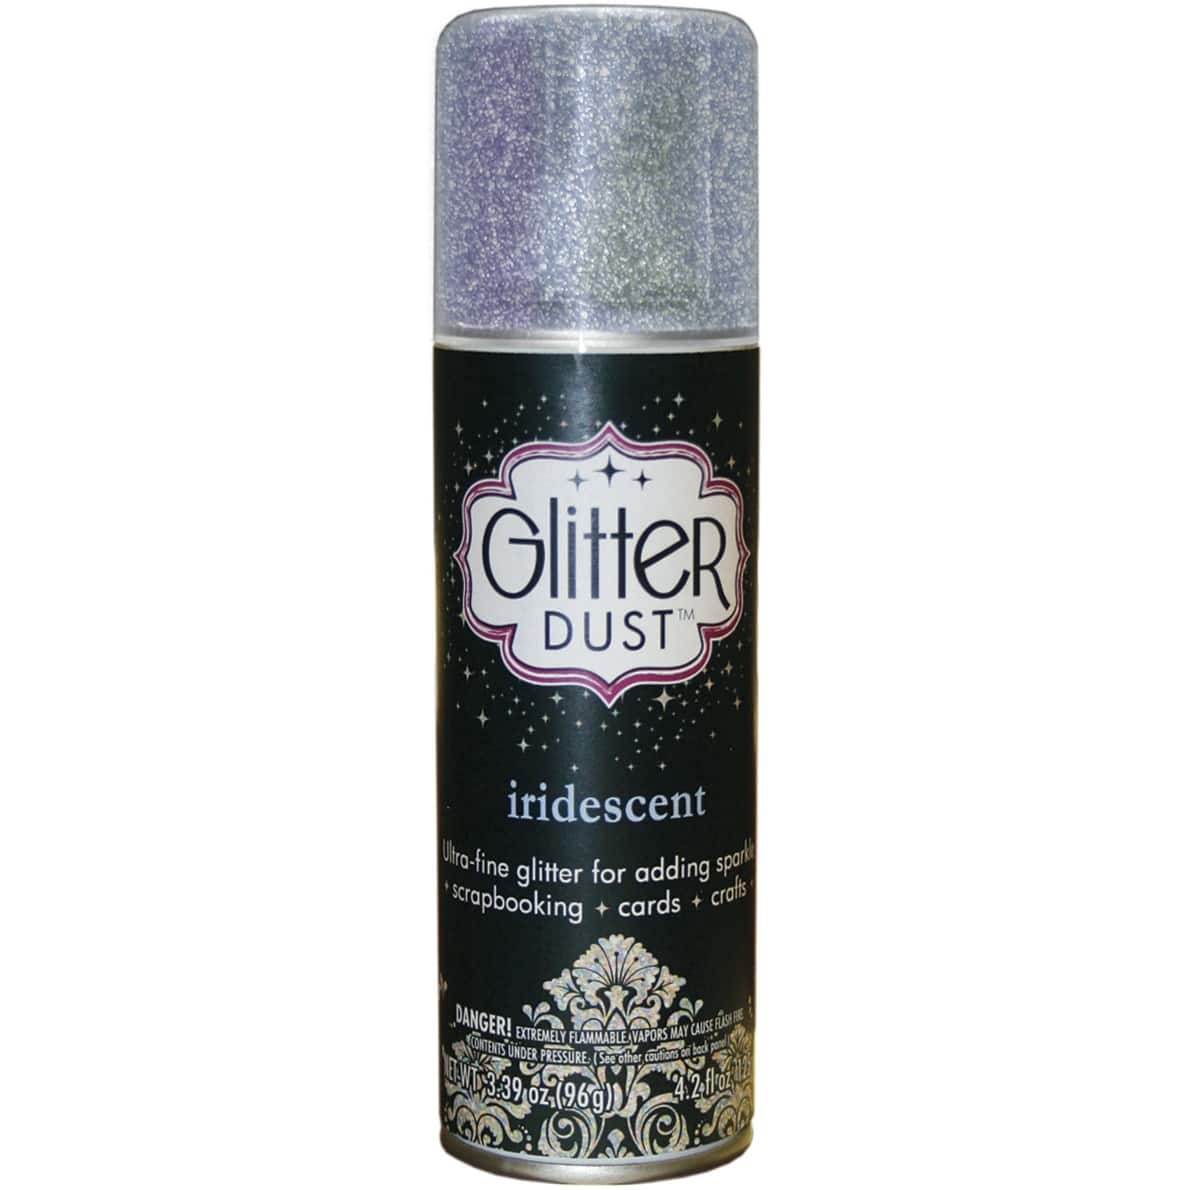 Helios II Glitter Glue Spray